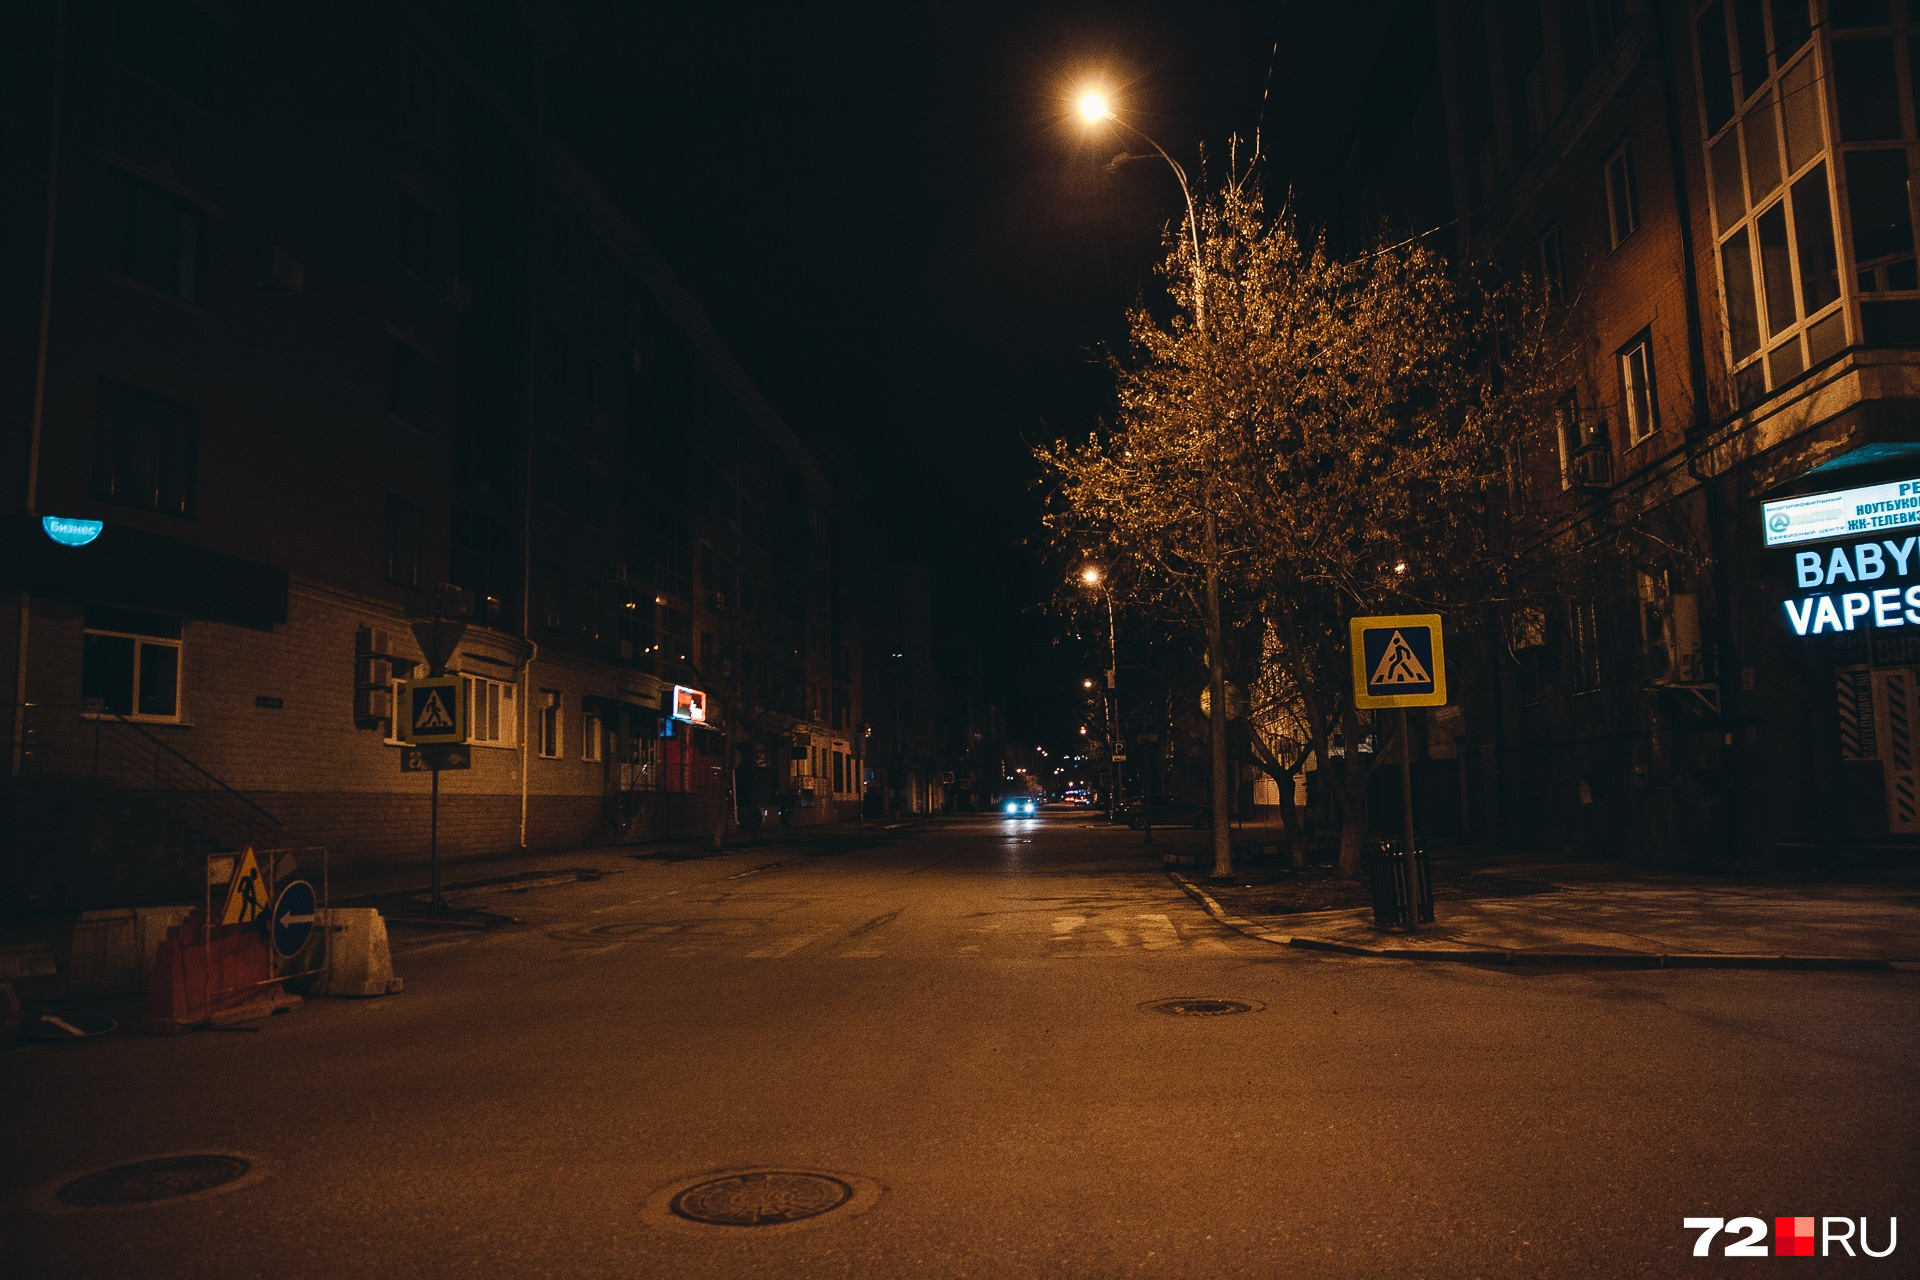 Так выглядела одна из улиц в центре поздним вечером. Здесь изредка проезжали машины